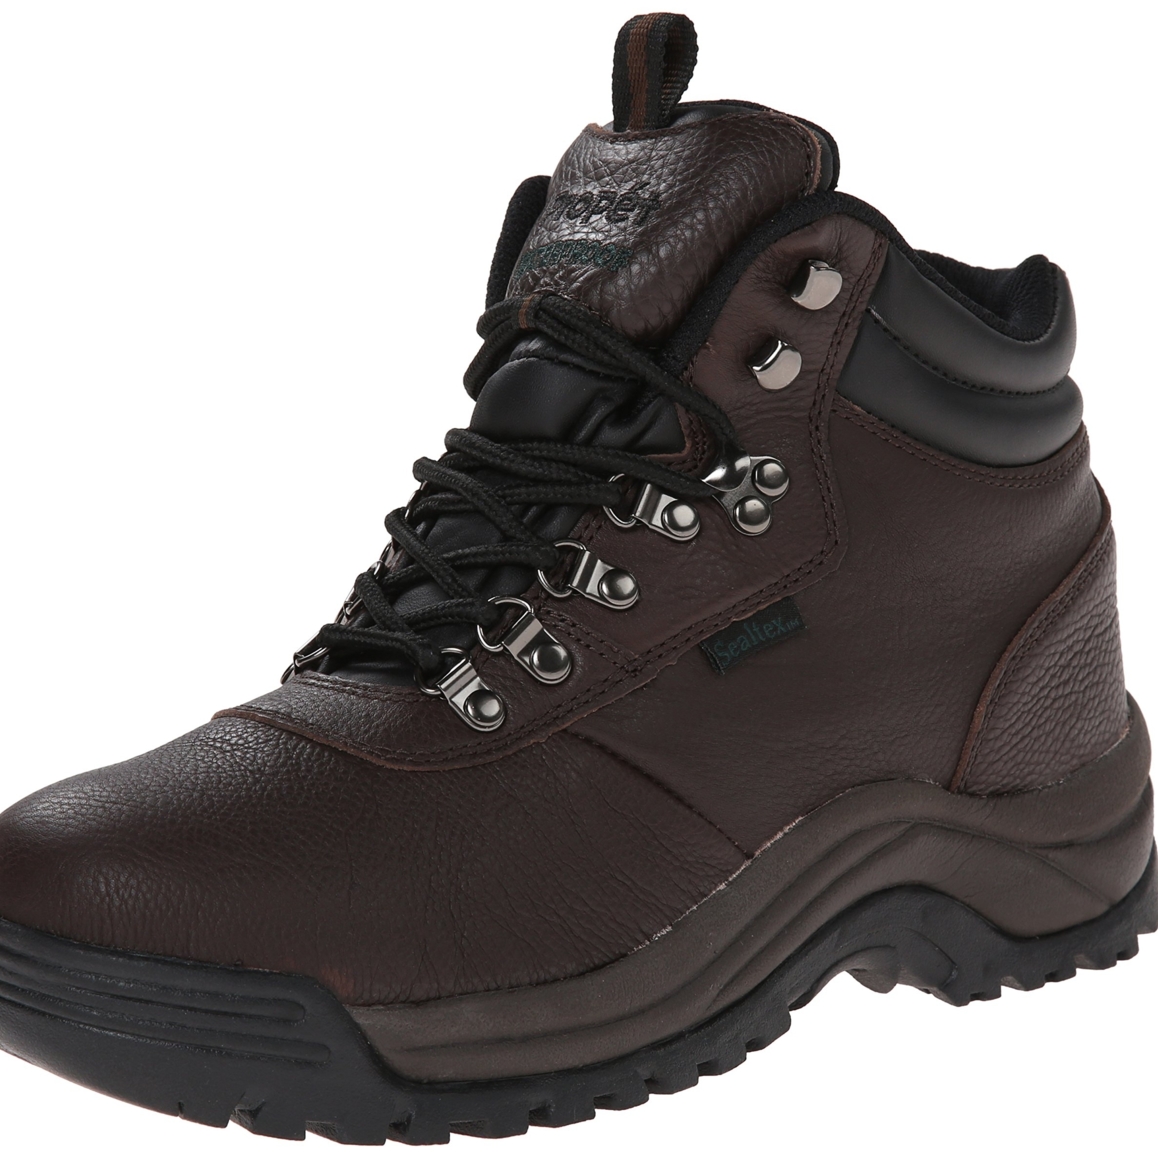 Propet Men's Cliff Walker Hiking Boot Bronco Brown - M3188BRO - BRONCO BROWN, 10.5-D